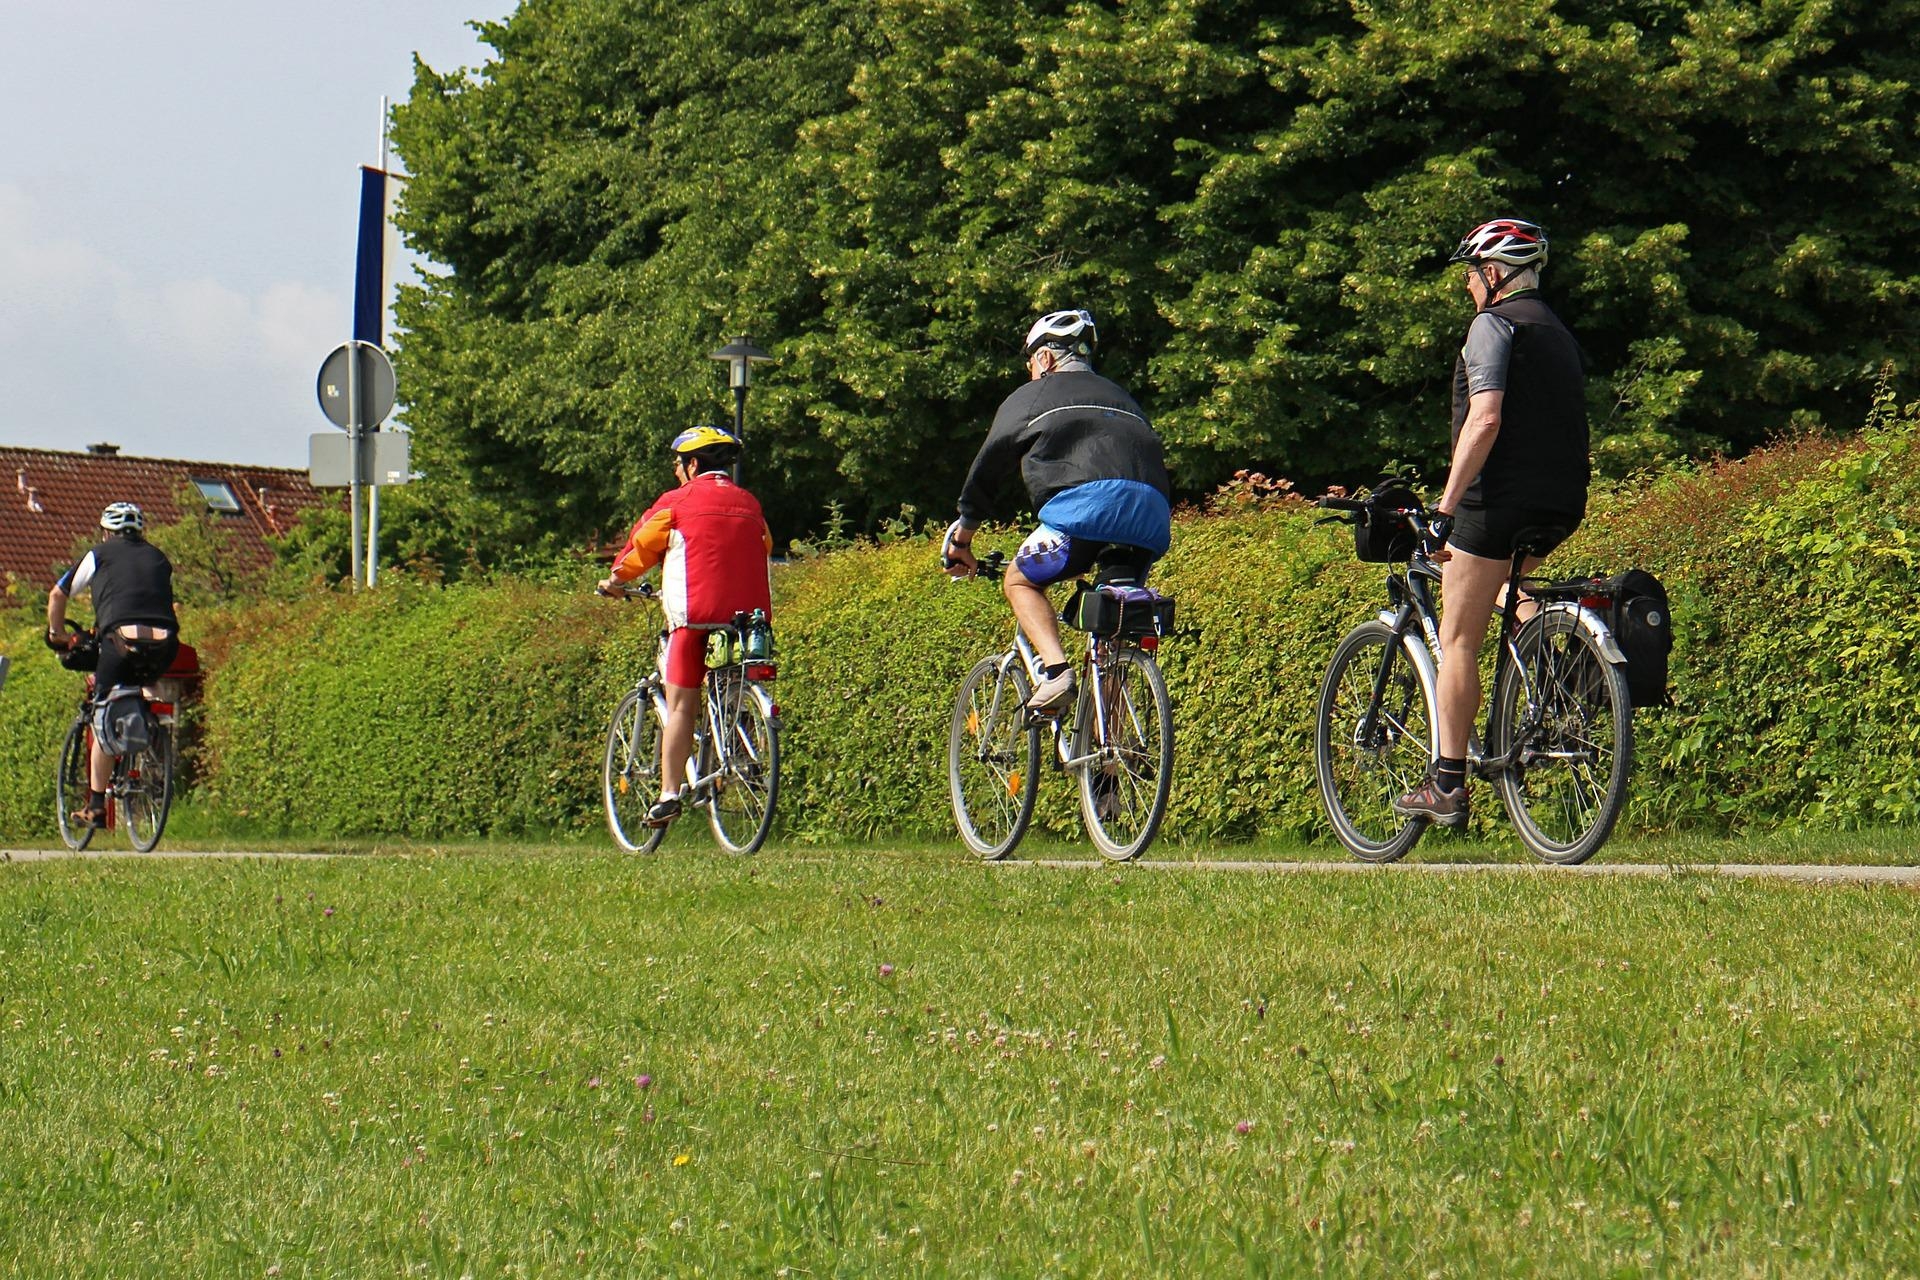 politica de acessibilidade: 4 pessoas pedalando, todas estão equipadas com equipamentos de segurança, capacete e tornozeleiras.